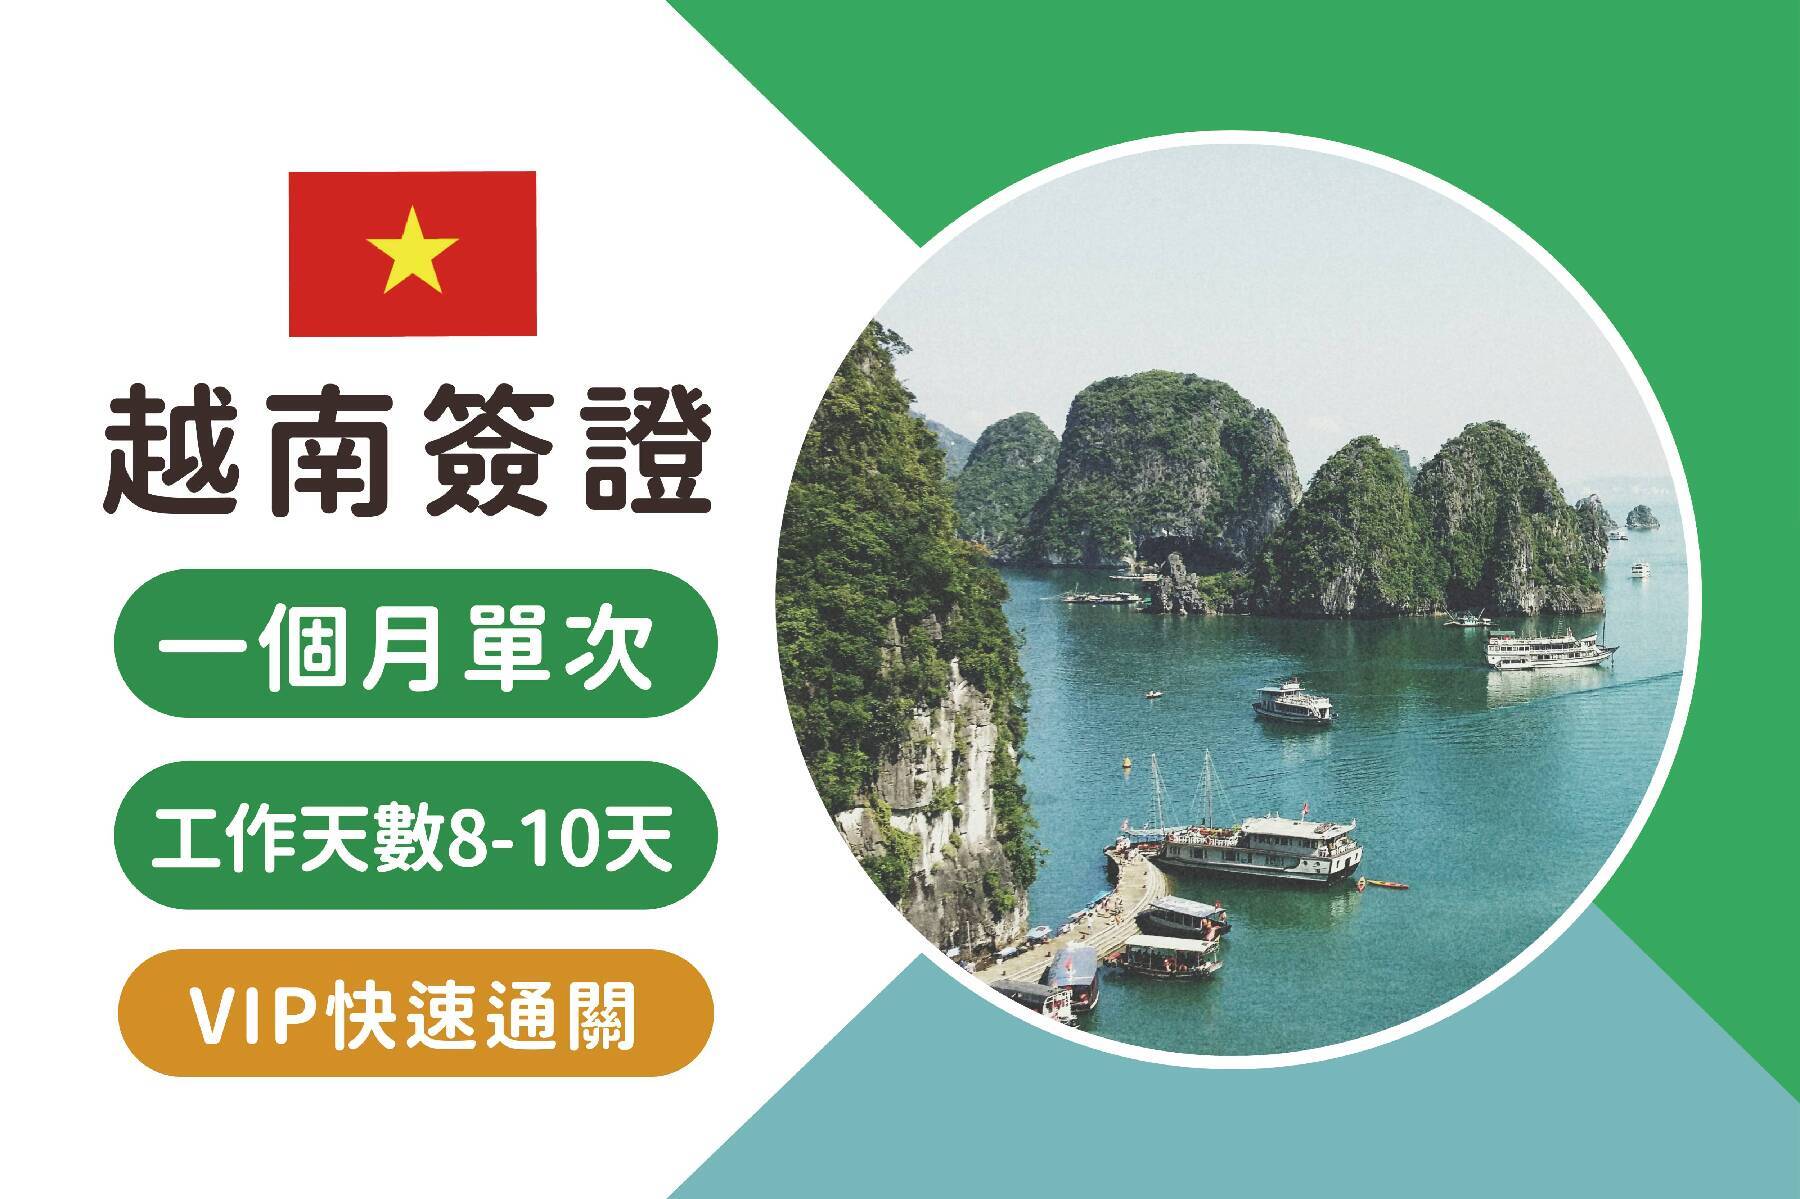 越南簽證-越南觀光電子簽證一個月單次+VIP快速通關(工作天數8-10天)1